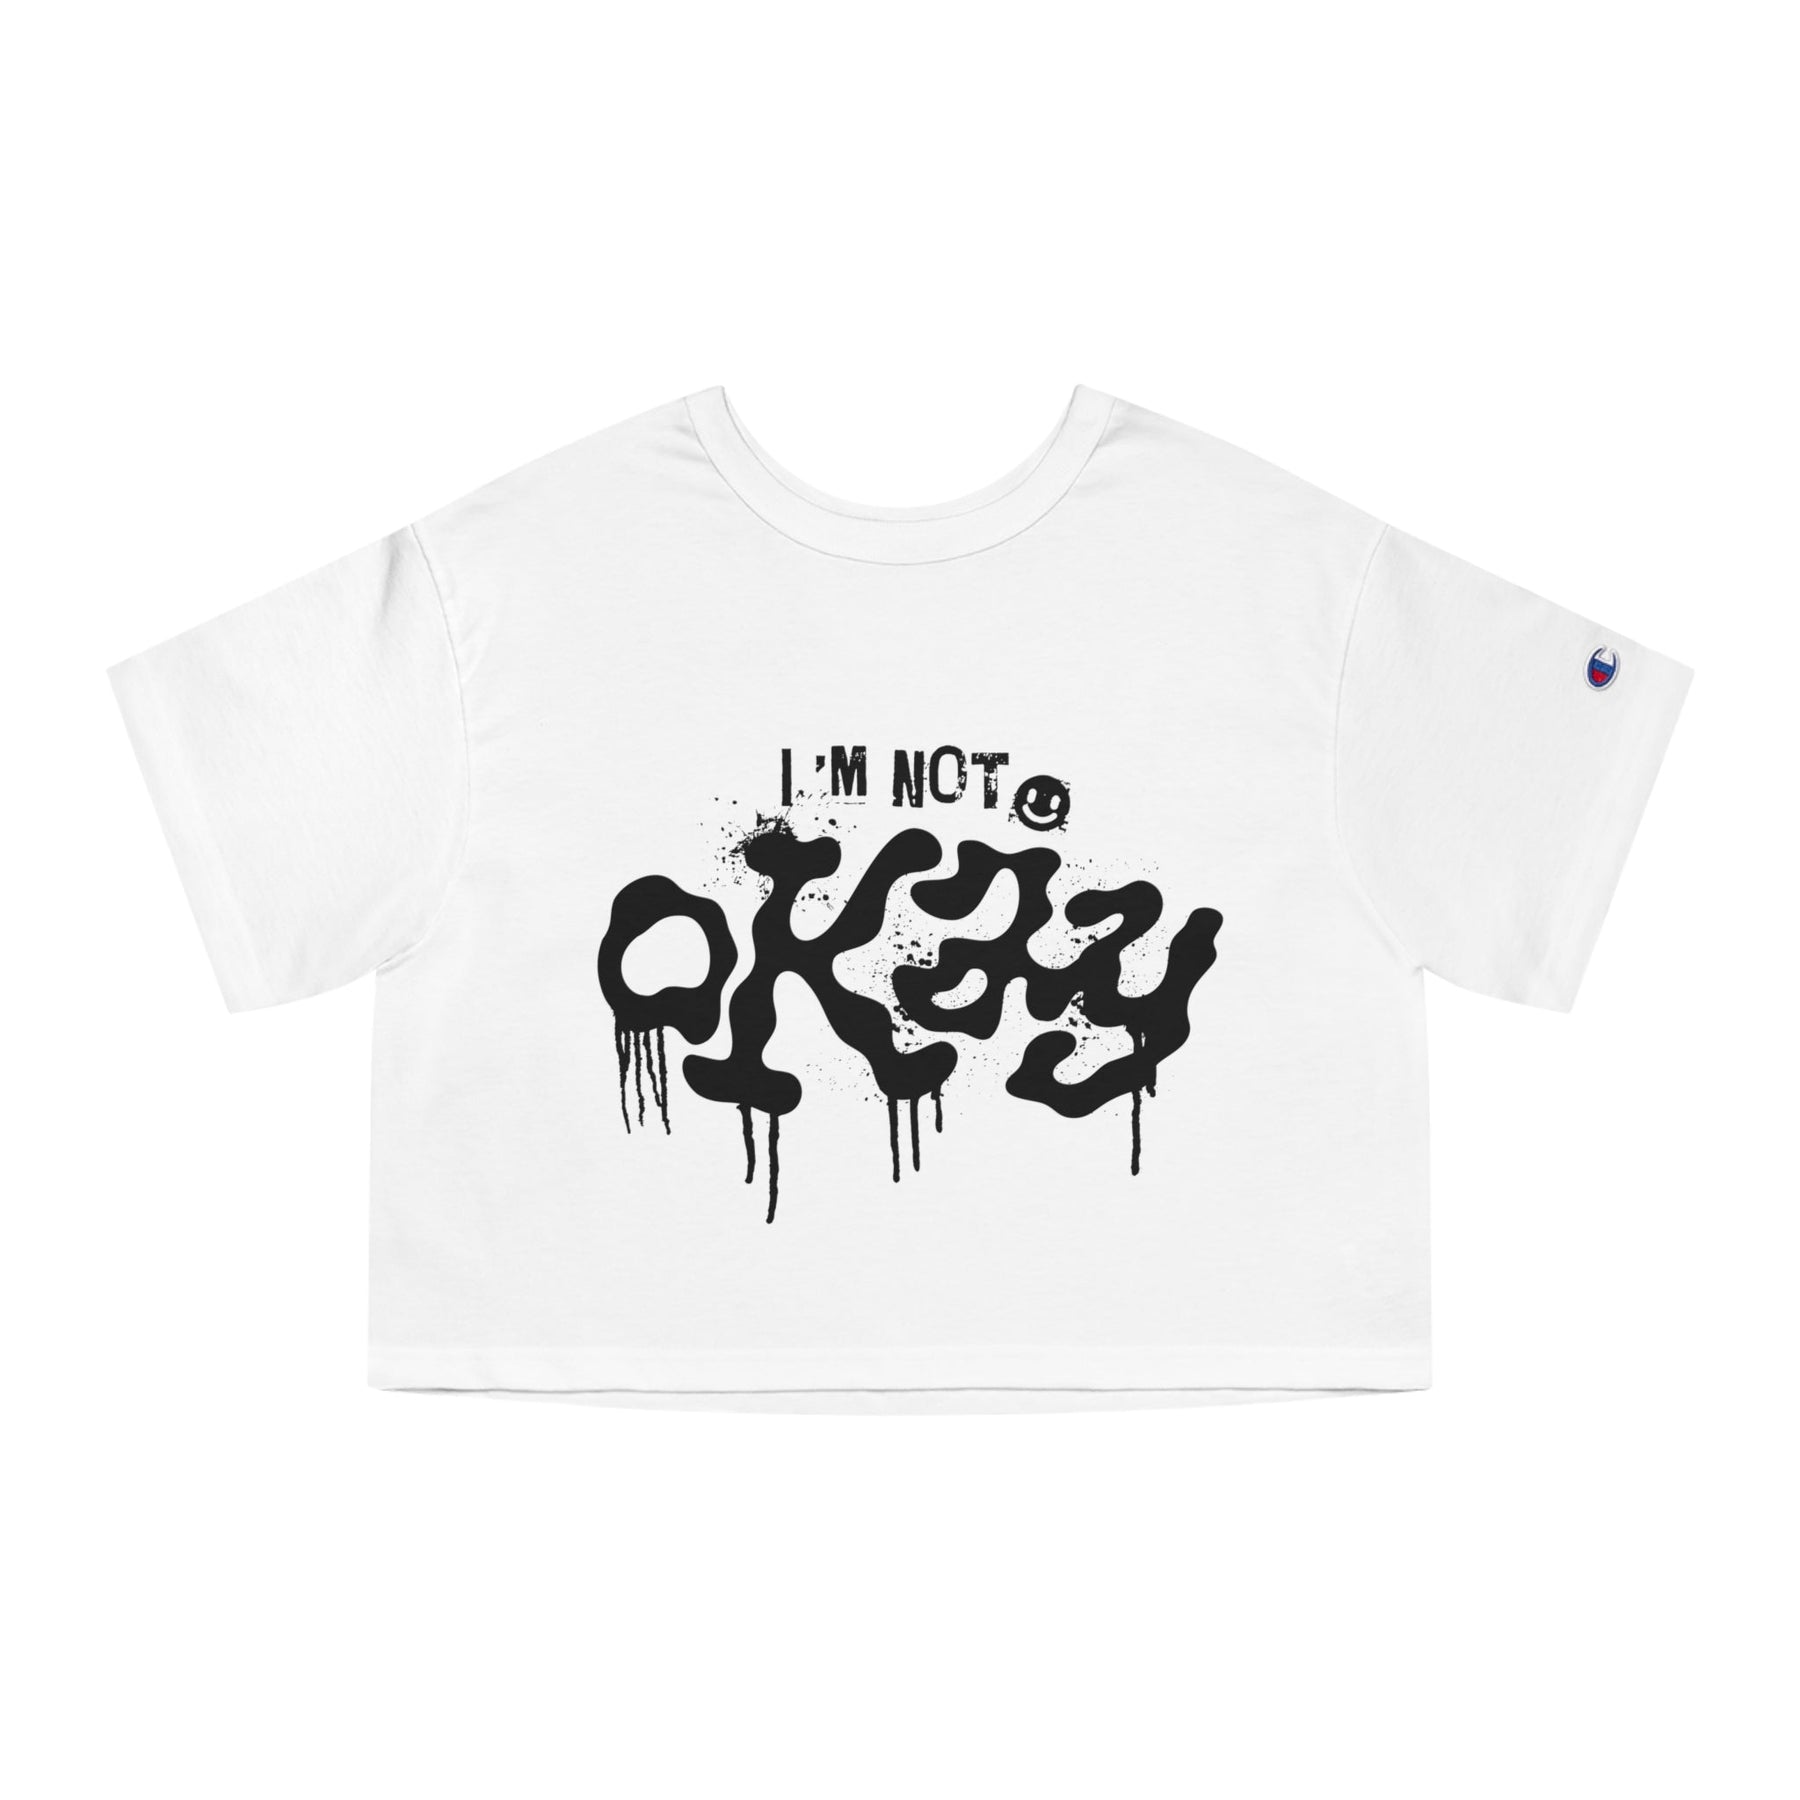 I'm Not Okay Heavyweight Cropped T-Shirt - Goth Cloth Co.T-Shirt25523836235895529240